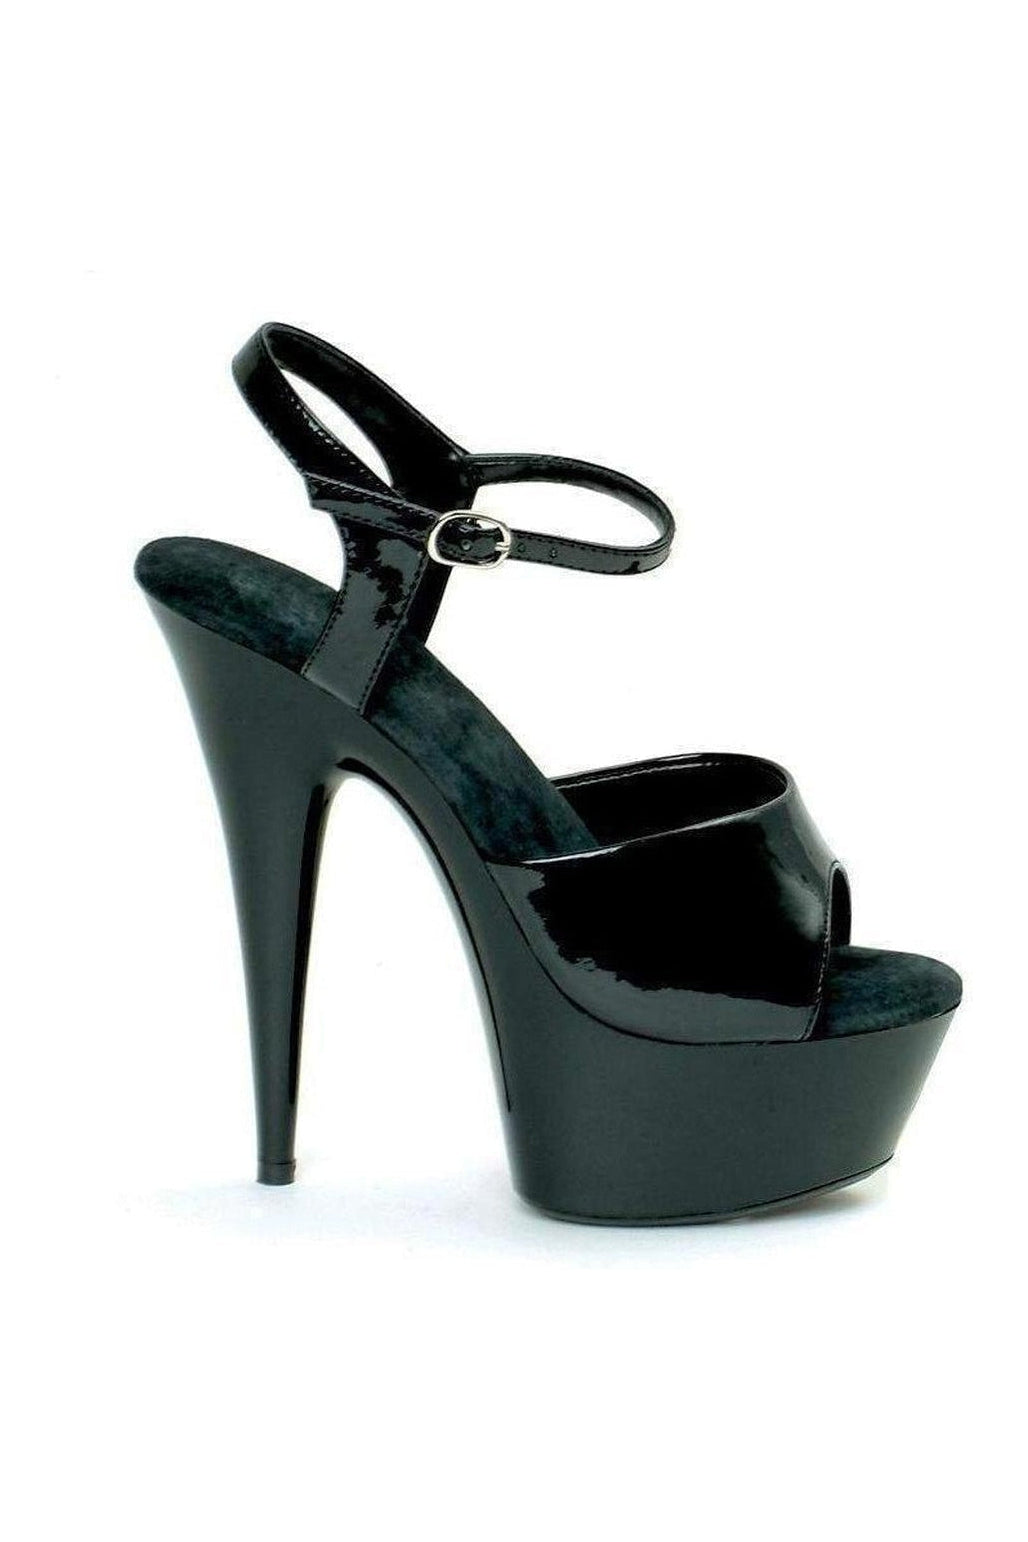 609-JULIET Platform Sandal | Black Patent-Ellie Shoes-Black-Sandals-SEXYSHOES.COM